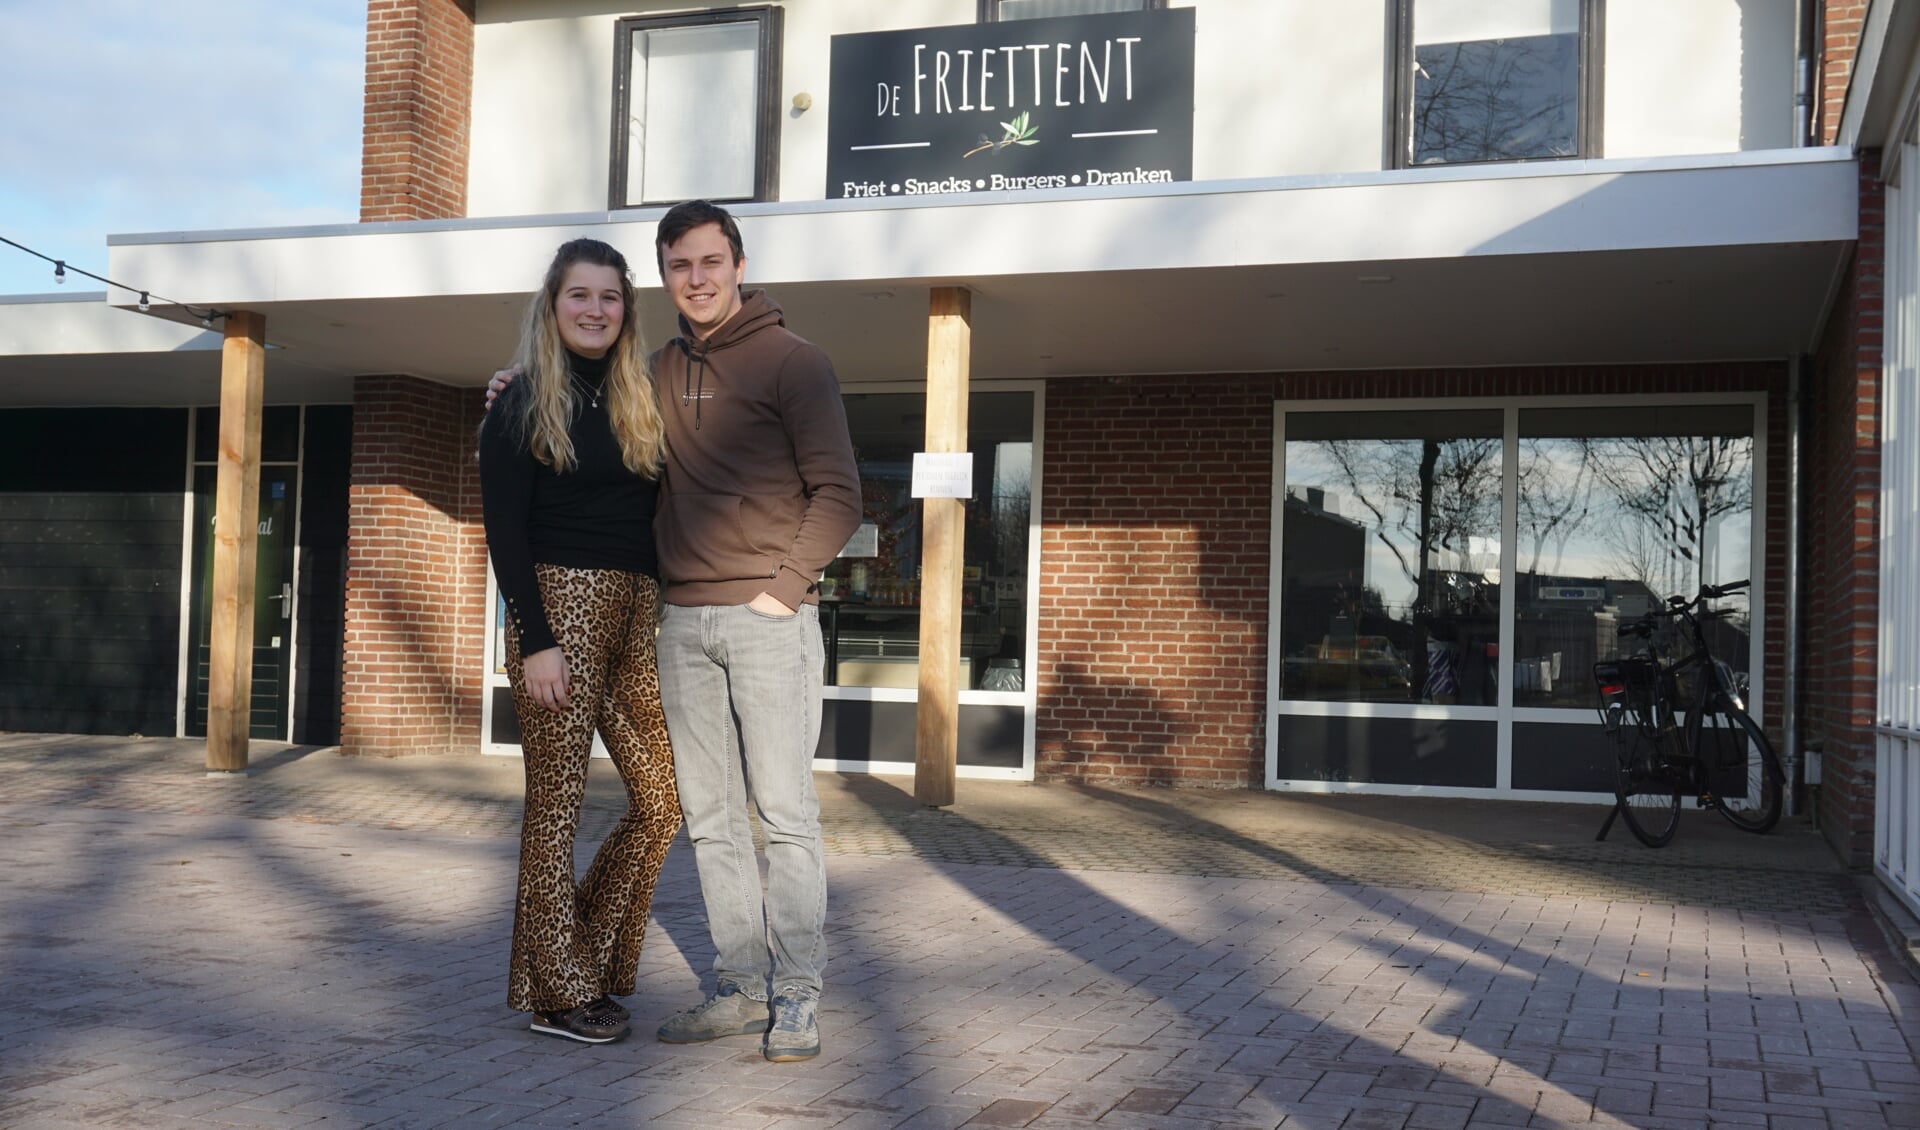 Julia en Fabien voor De Friettent, die na negen jaar weer open is.